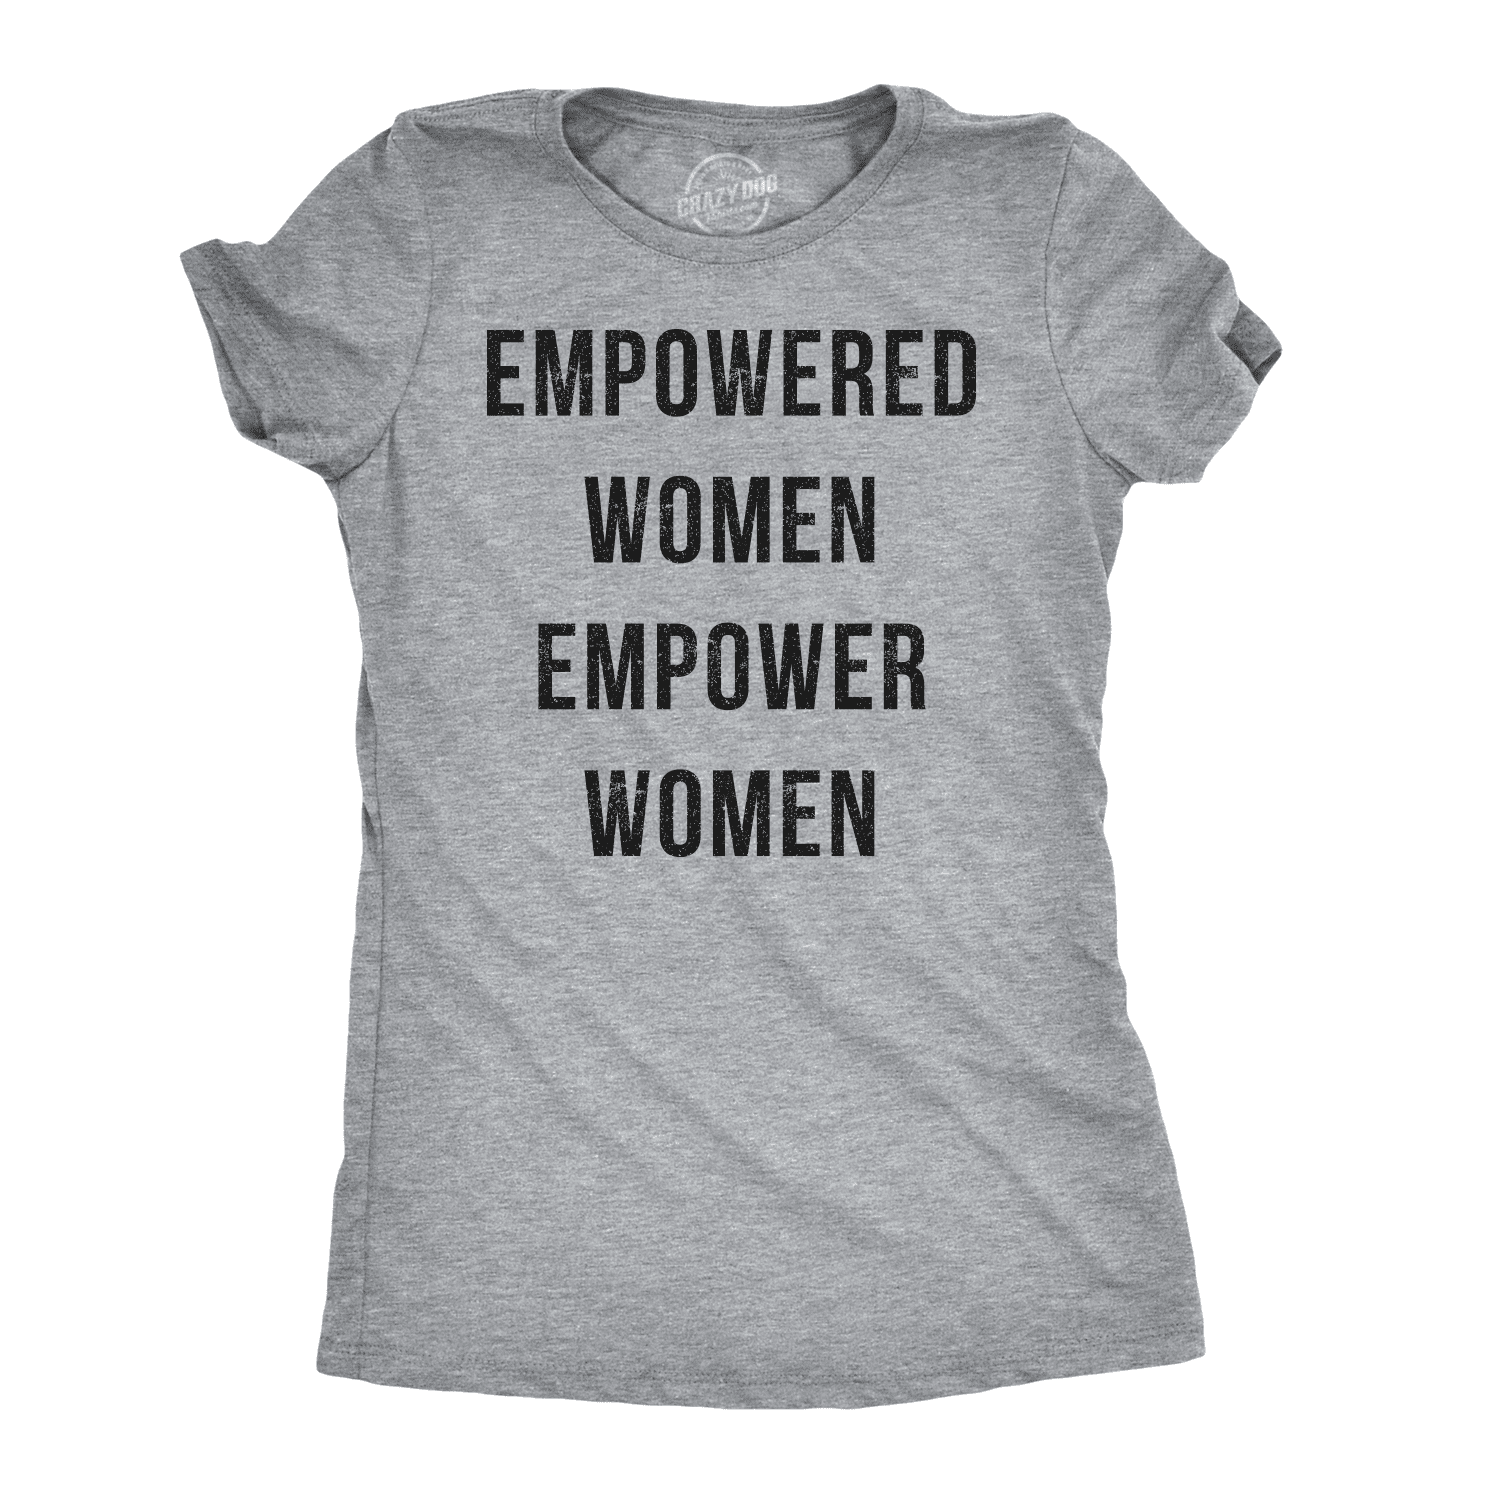 Woman up Tank Top, Women Empowerment Shirt, Cute Women's Graphic Shirt, Women's  Shirt, Babes Shirt, Girls Support Girls, Feminist, Woman Up 